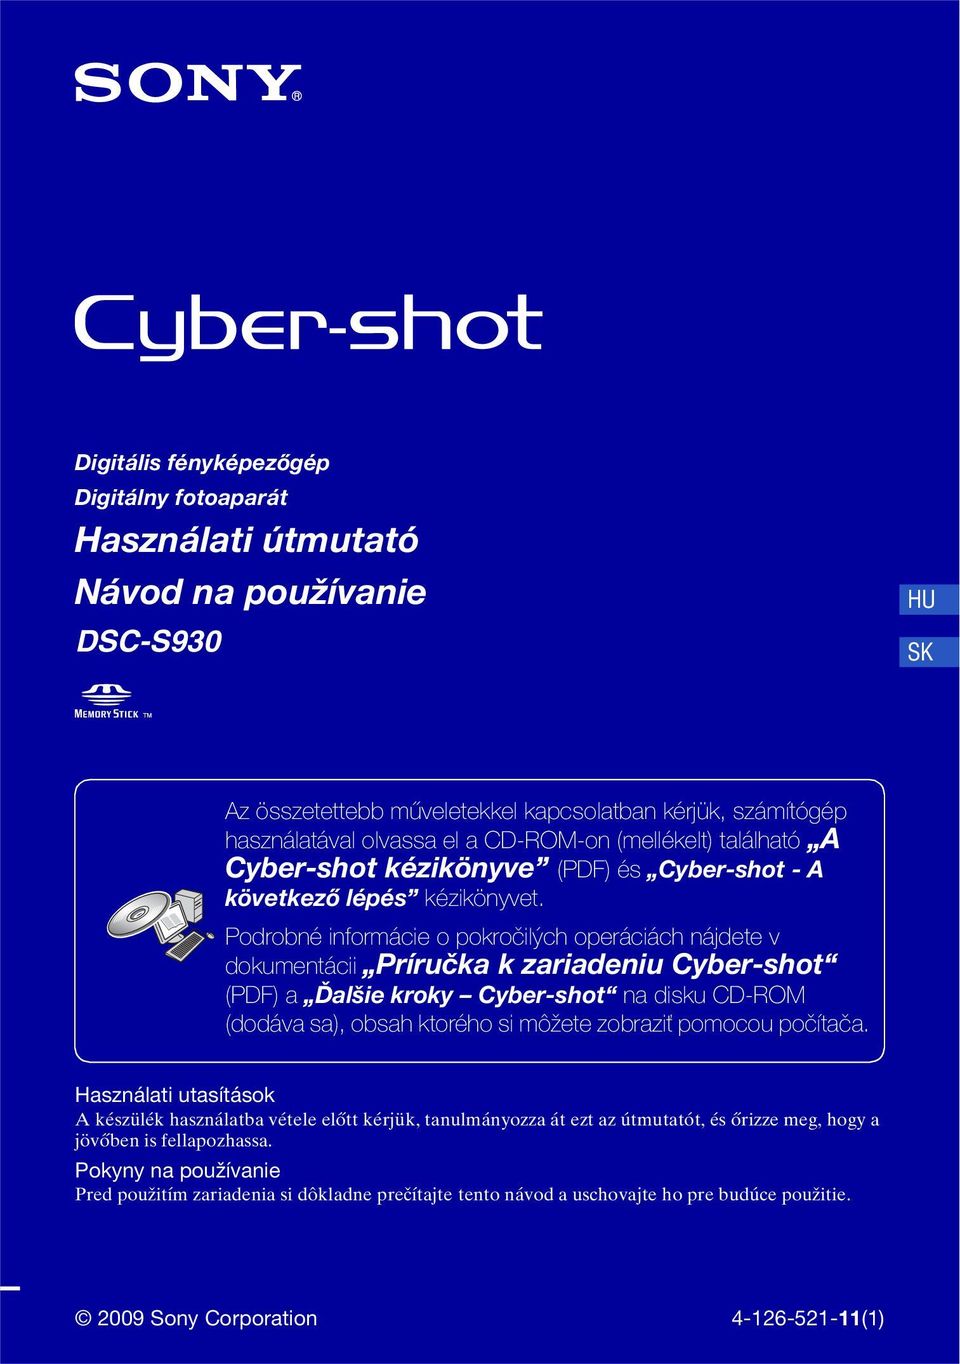 Podrobné informácie o pokročilých operáciách nájdete v dokumentácii Príručka k zariadeniu Cyber-shot (PDF) a Ďalšie kroky Cyber-shot na disku CD-ROM (dodáva sa), obsah ktorého si môžete zobraziť